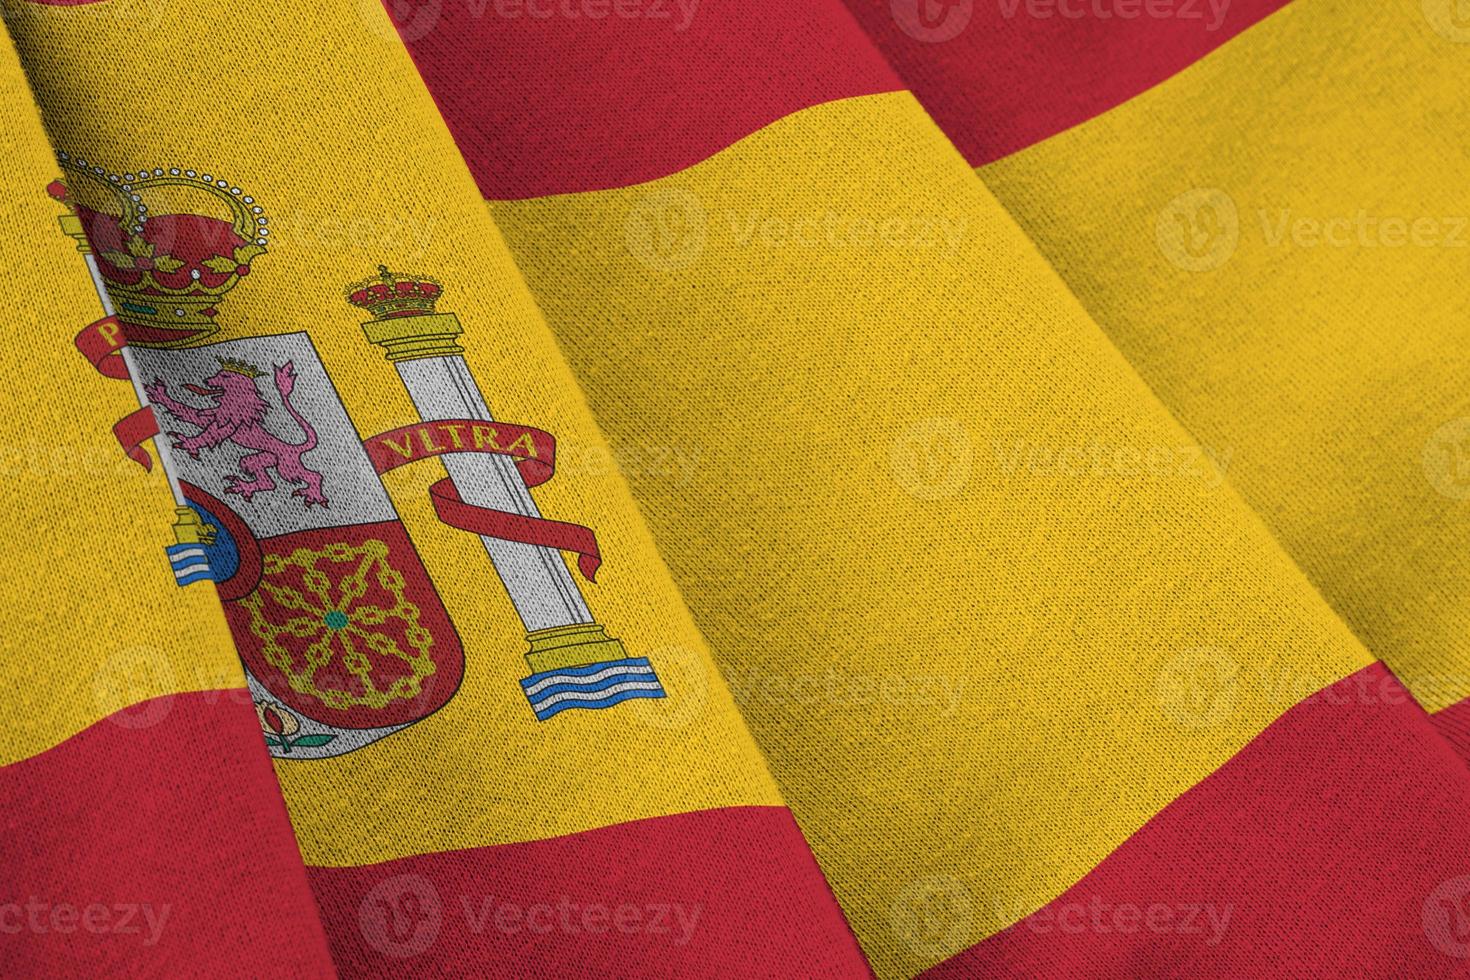 spanische flagge mit großen falten, die dicht unter dem studiolicht im innenbereich wehen. die offiziellen symbole und farben im banner foto